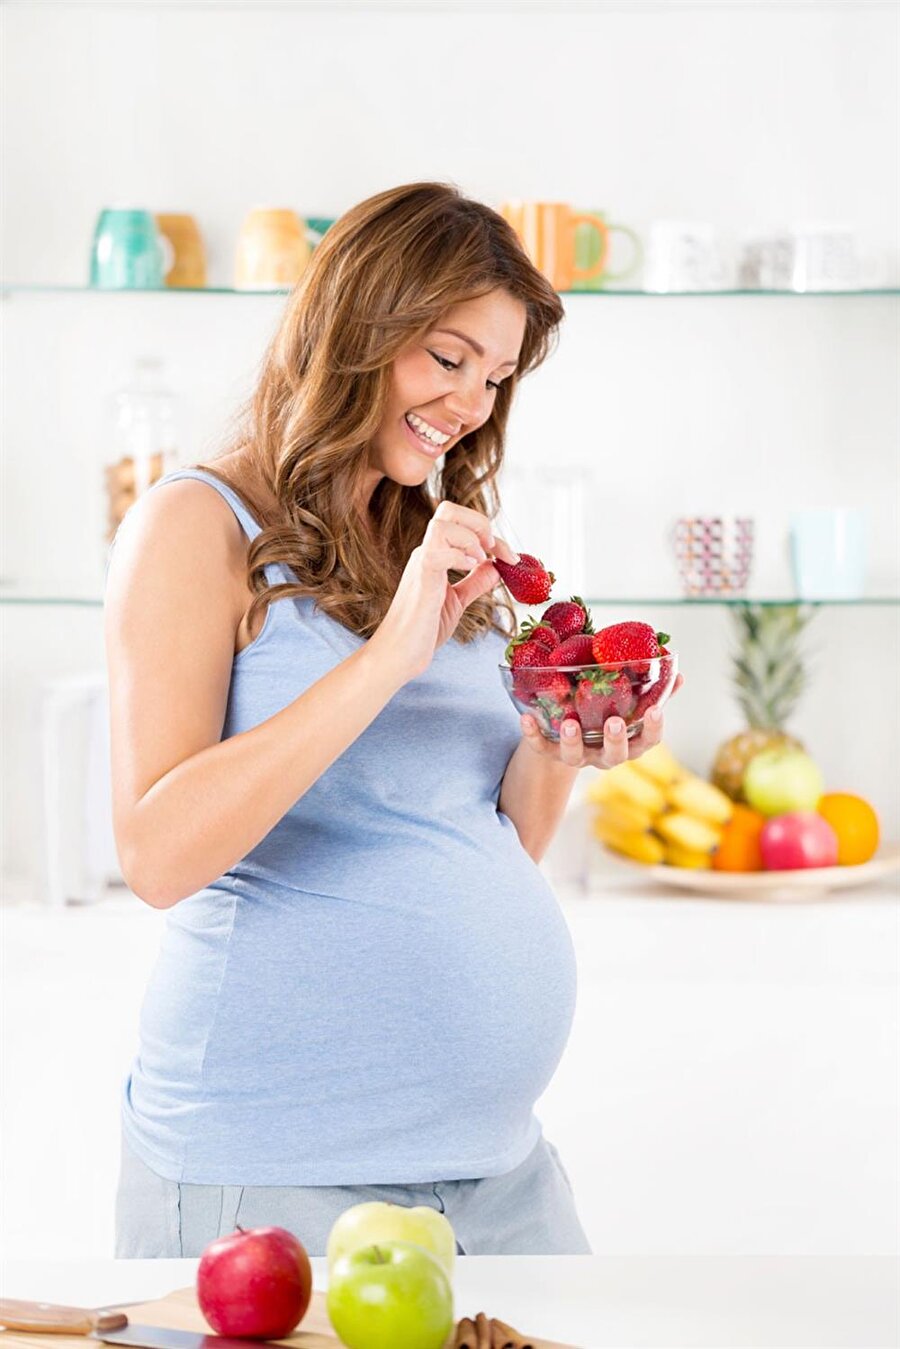 İştah açılıyor

                                    Hamilelik döneminde hormonal nedenlerden dolayı annelerin iştahları birazcık açılıyor (!)
                                